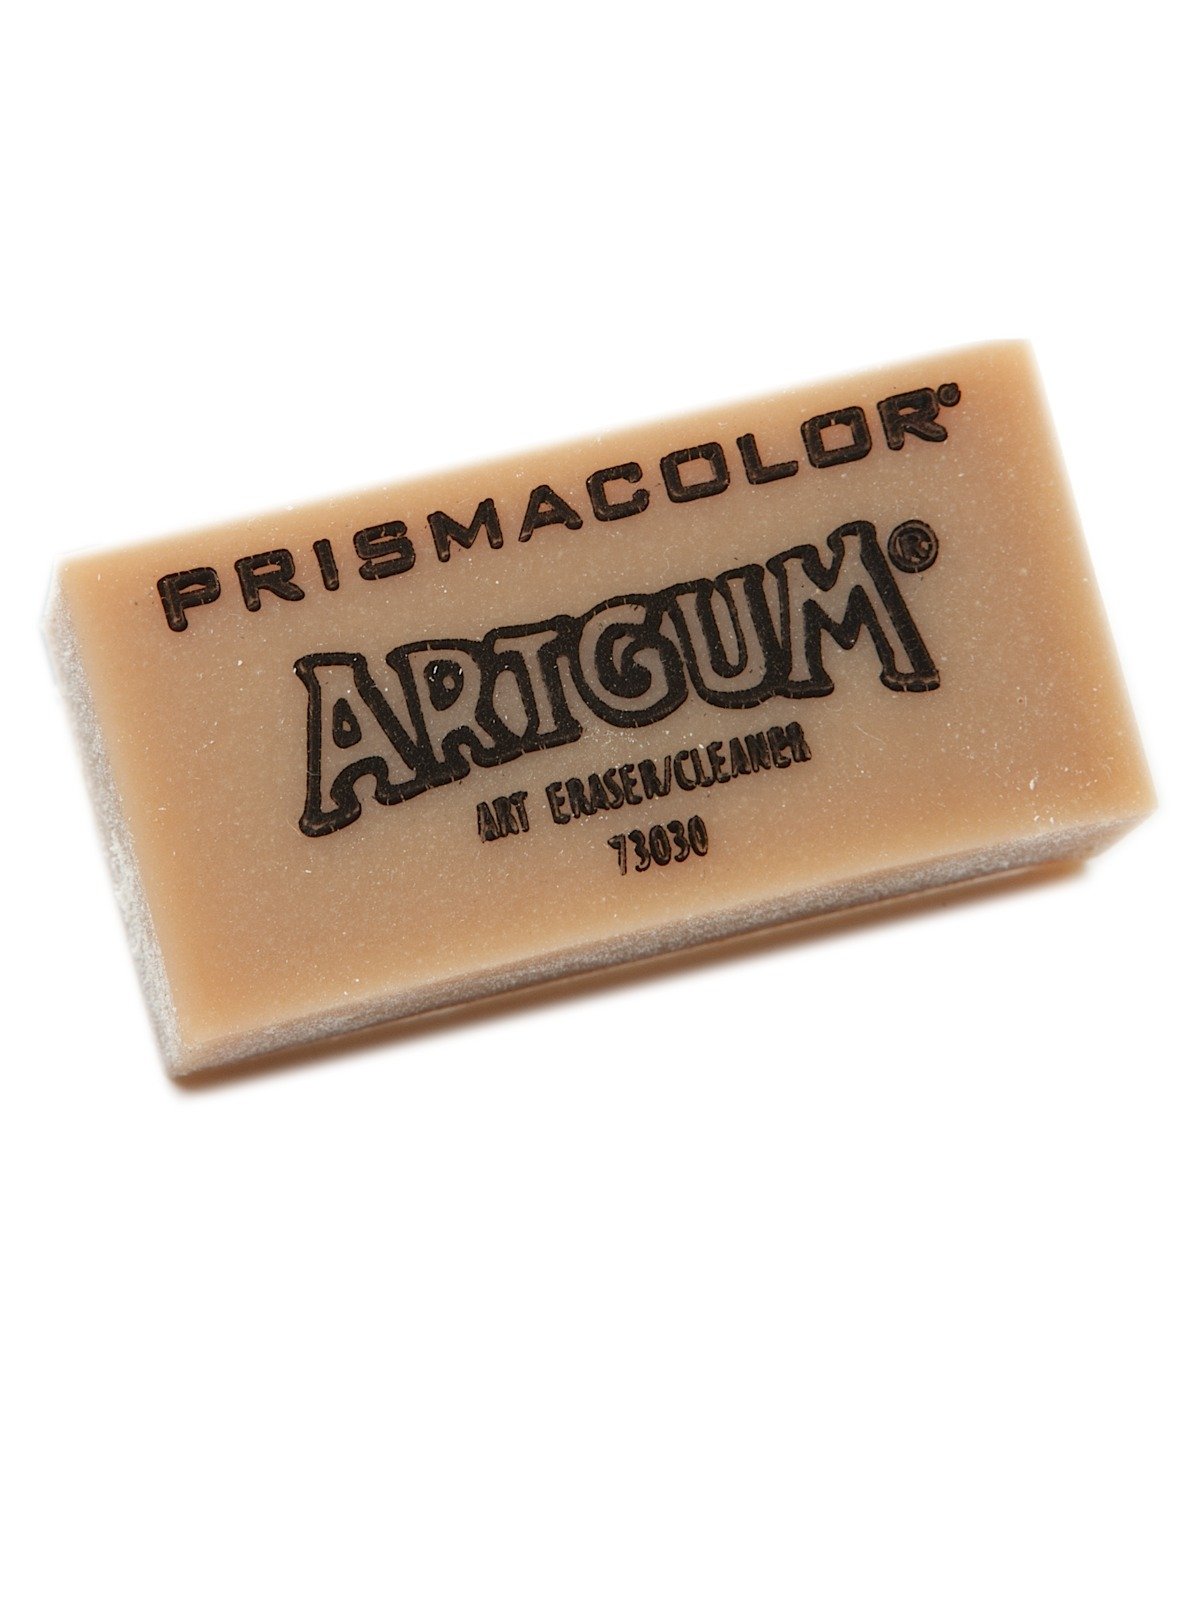 Artgum Gum Erasers 2 in. x 1 in. x 7/8 in., each